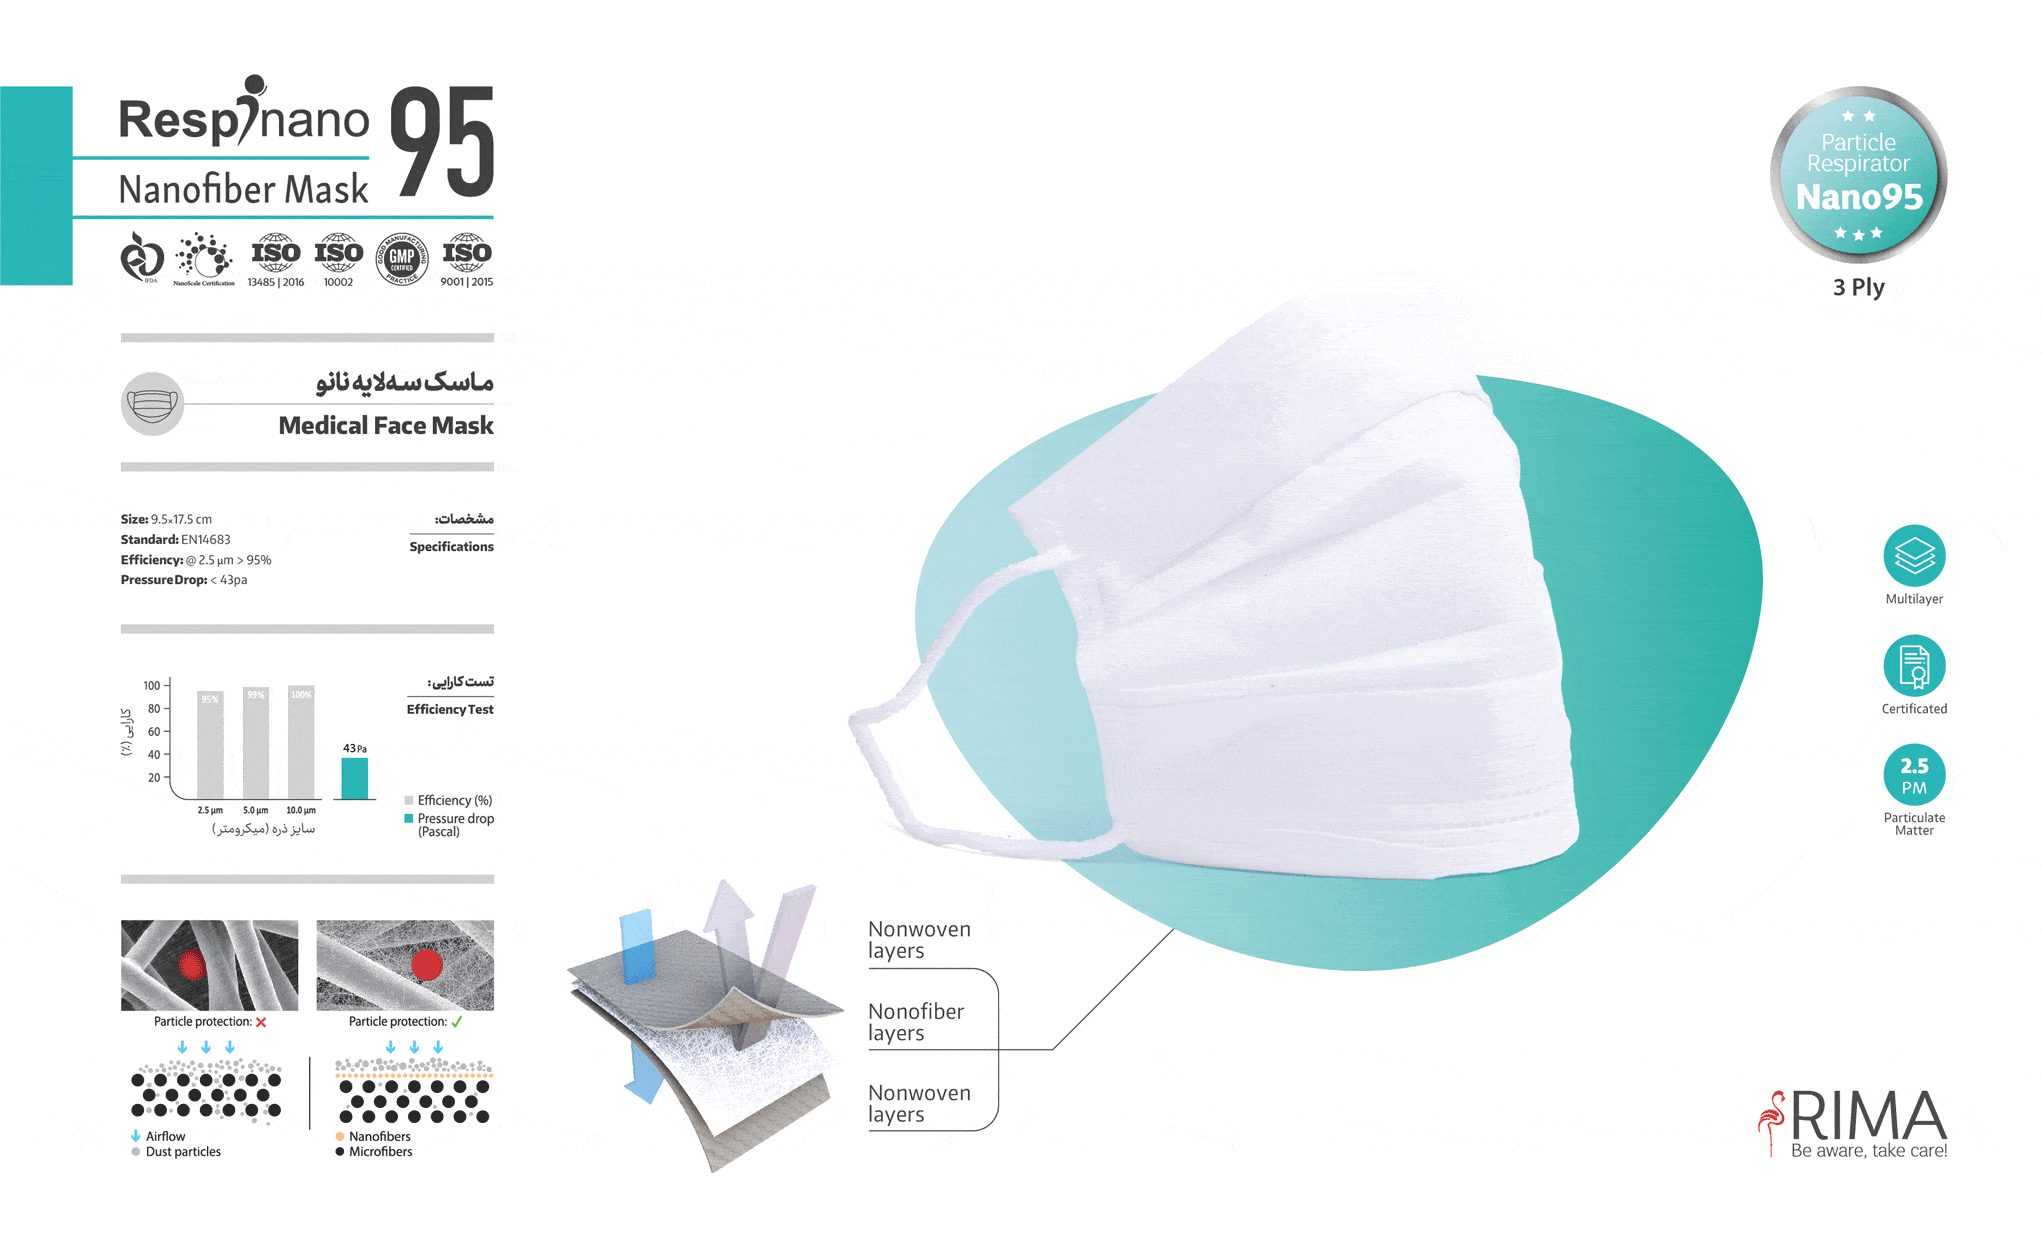 ماسک سه لایه مدل 95 رسپی نانو ریما